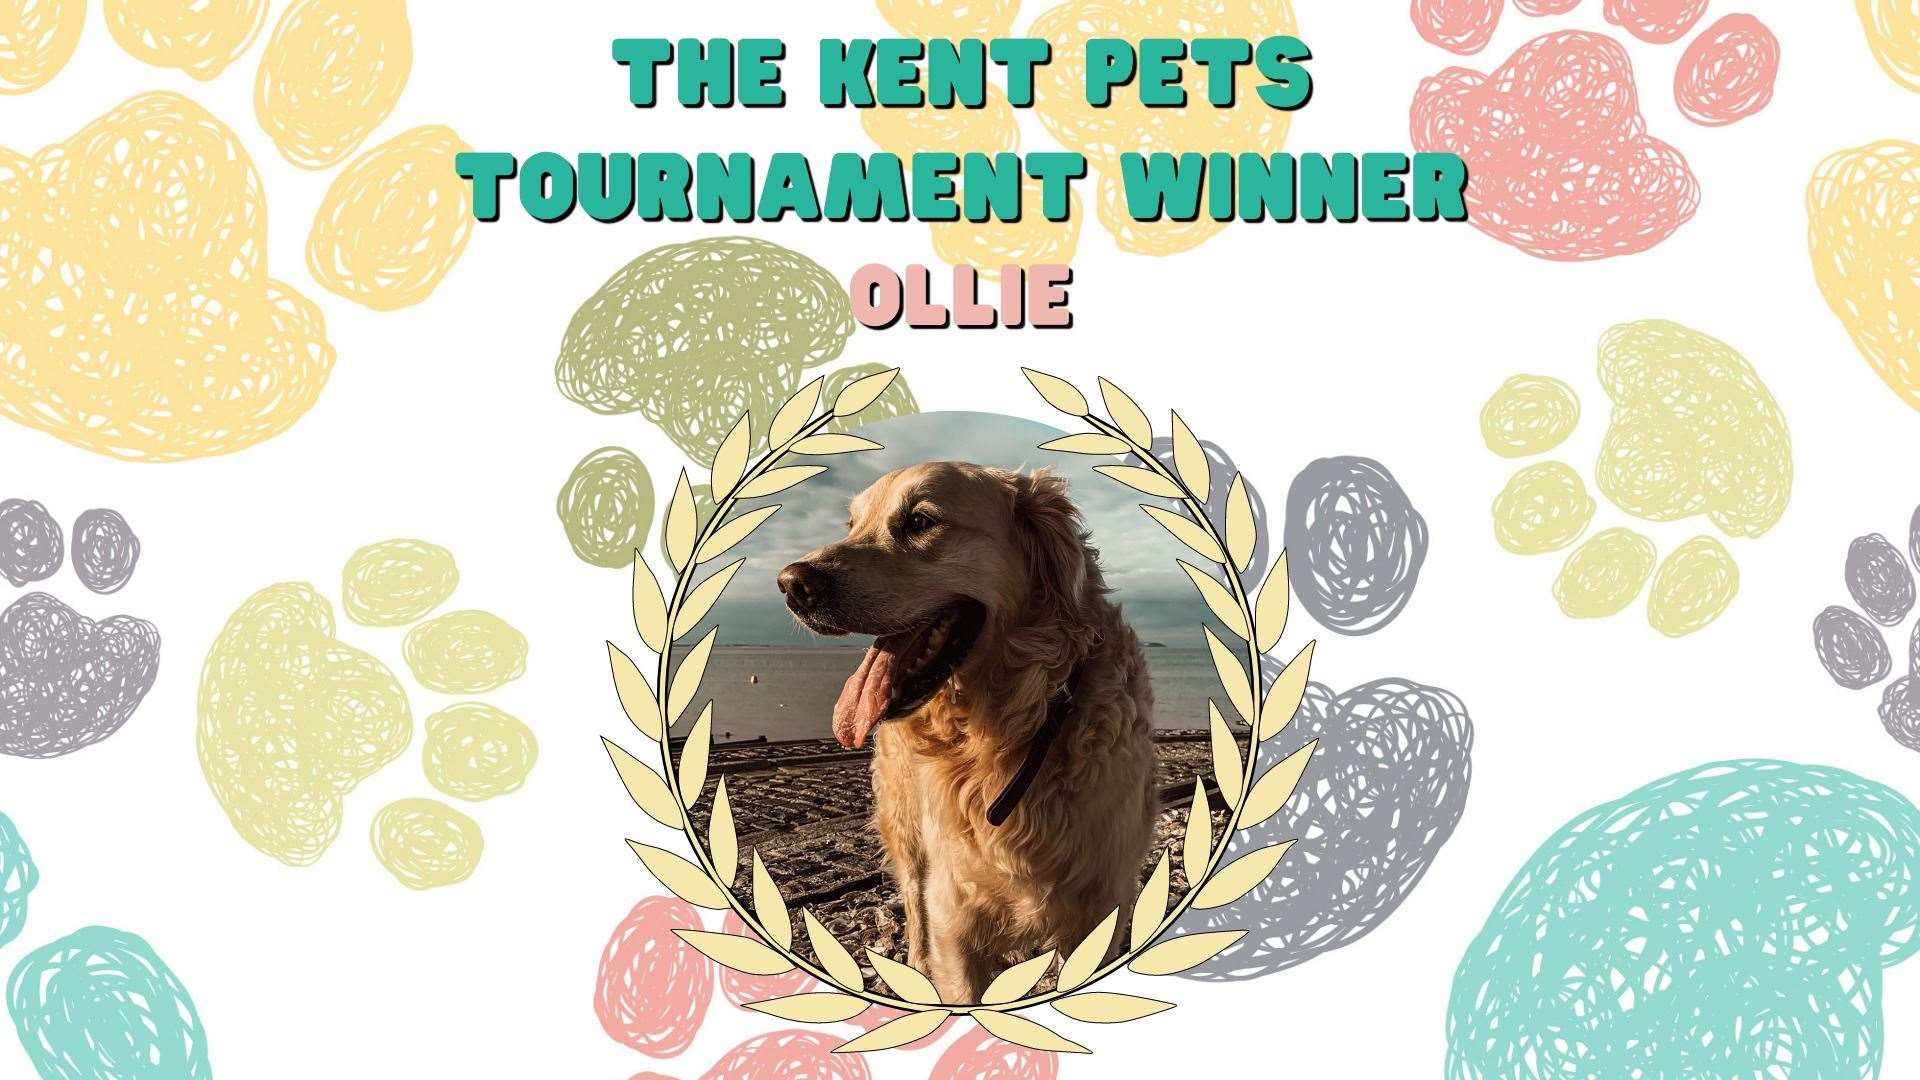 Ollie has won July's Kent Pets Tournament